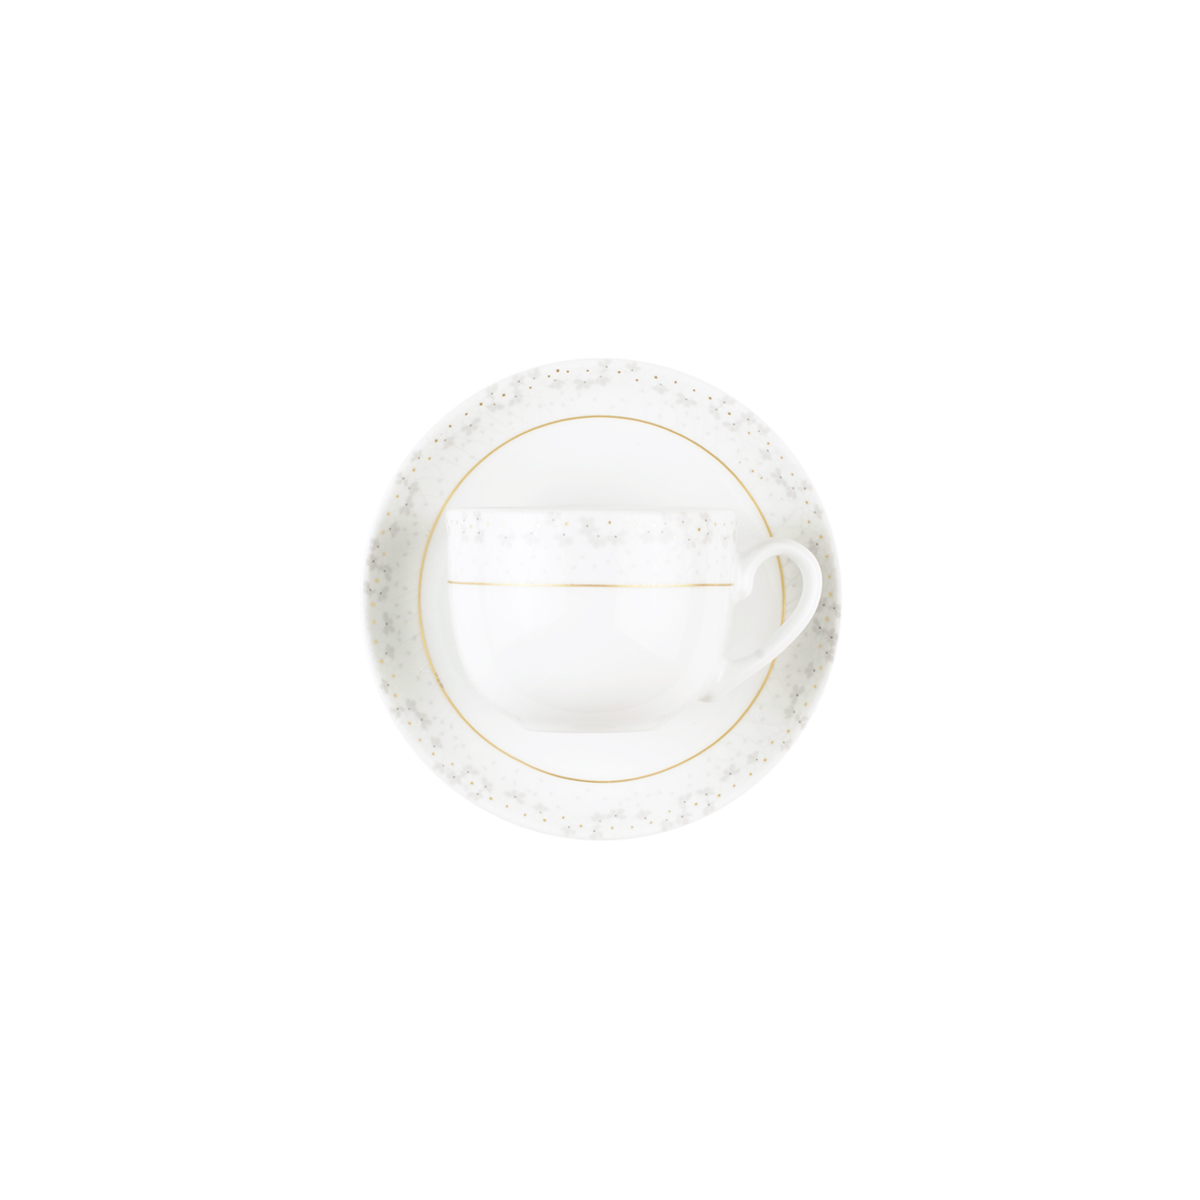 سرویس چینی 12 پارچه چای خوری برایدال سفید